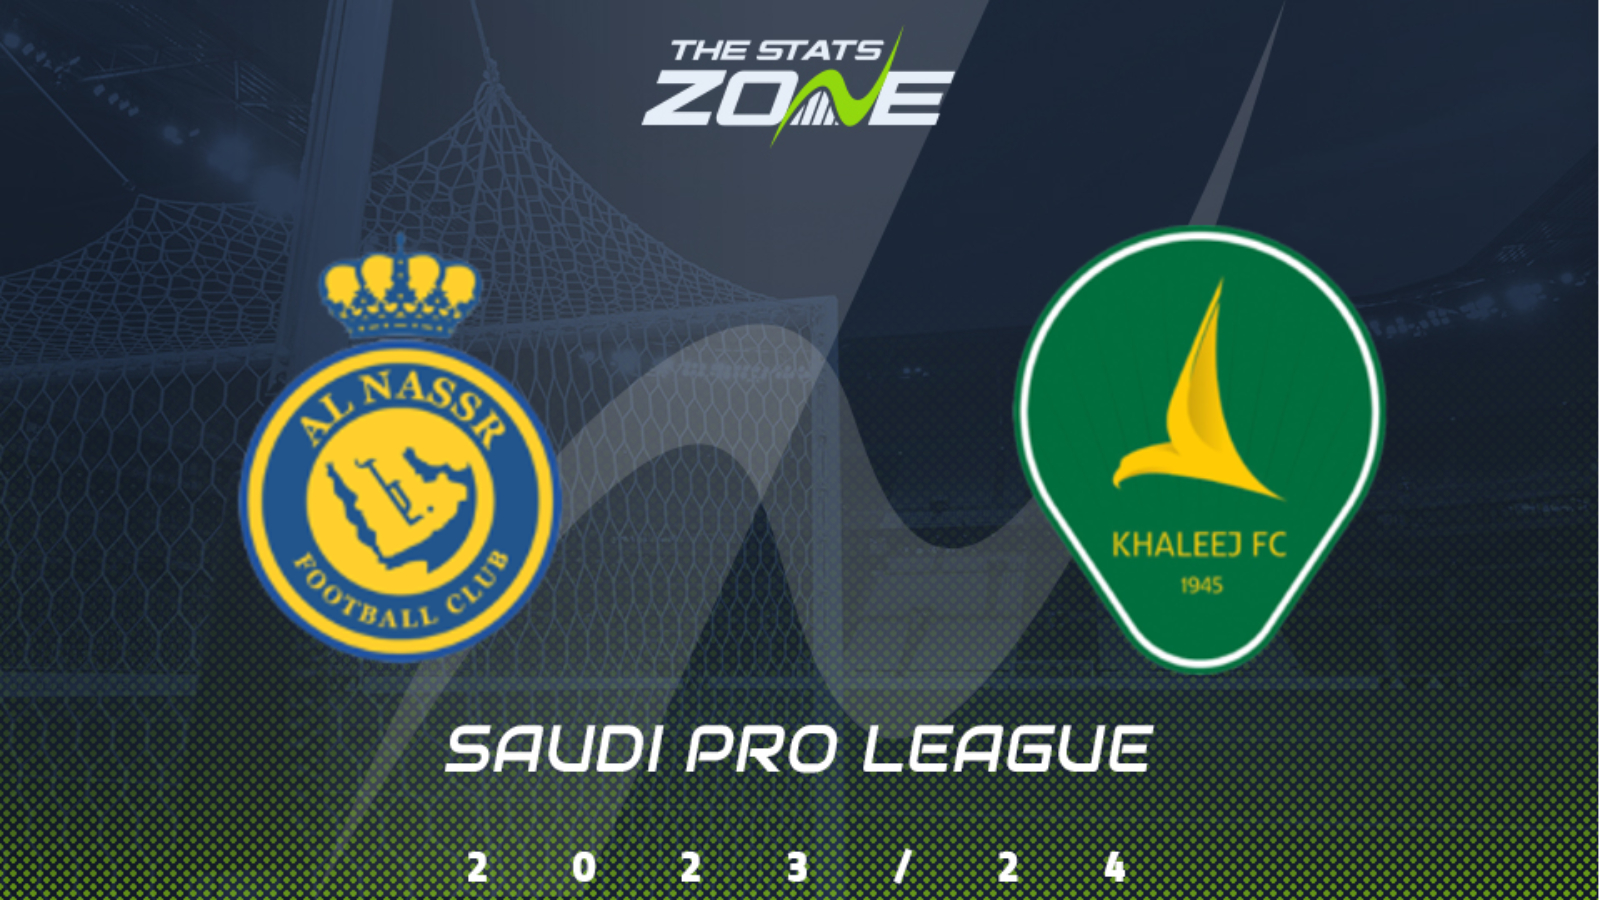 Saudi Pro League logo. Saudi Pro League standings. Saudi Pro League logo без фона.